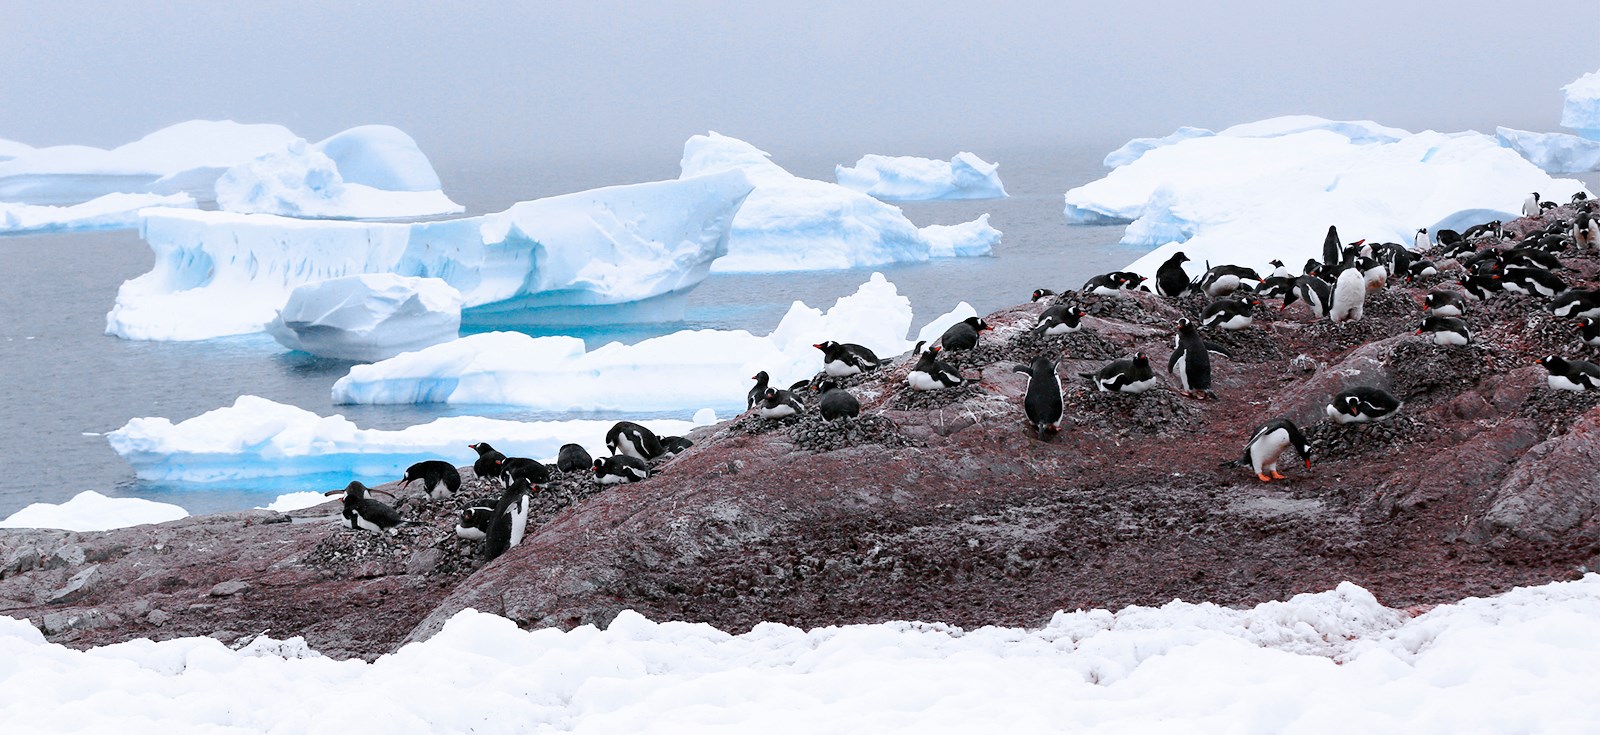 《库弗维尔企鹅岛》2017年摄于南极_1.jpg